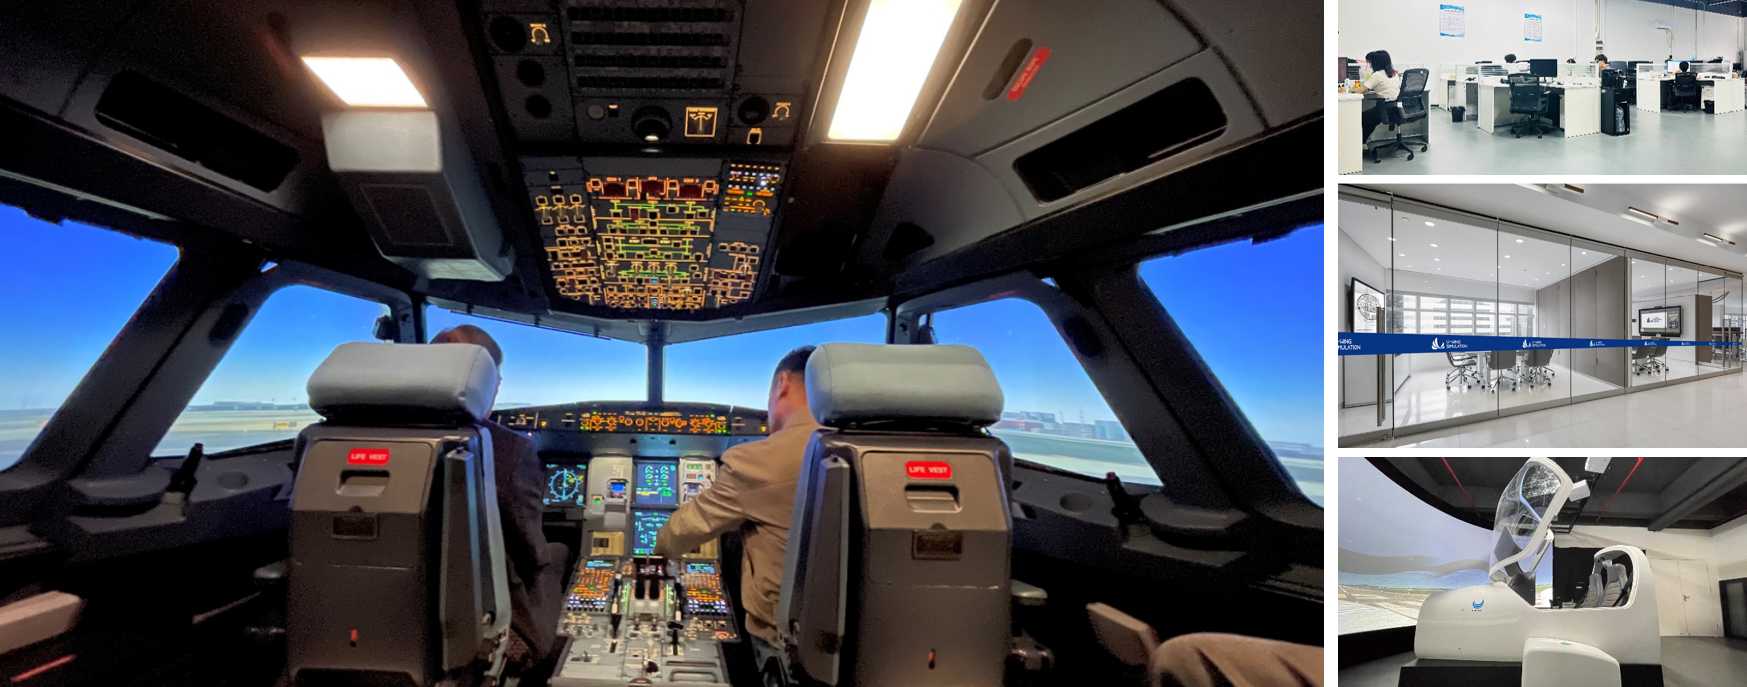 优翼仿真为用户提供更安全、更高效、更经济的飞行培训-3290 